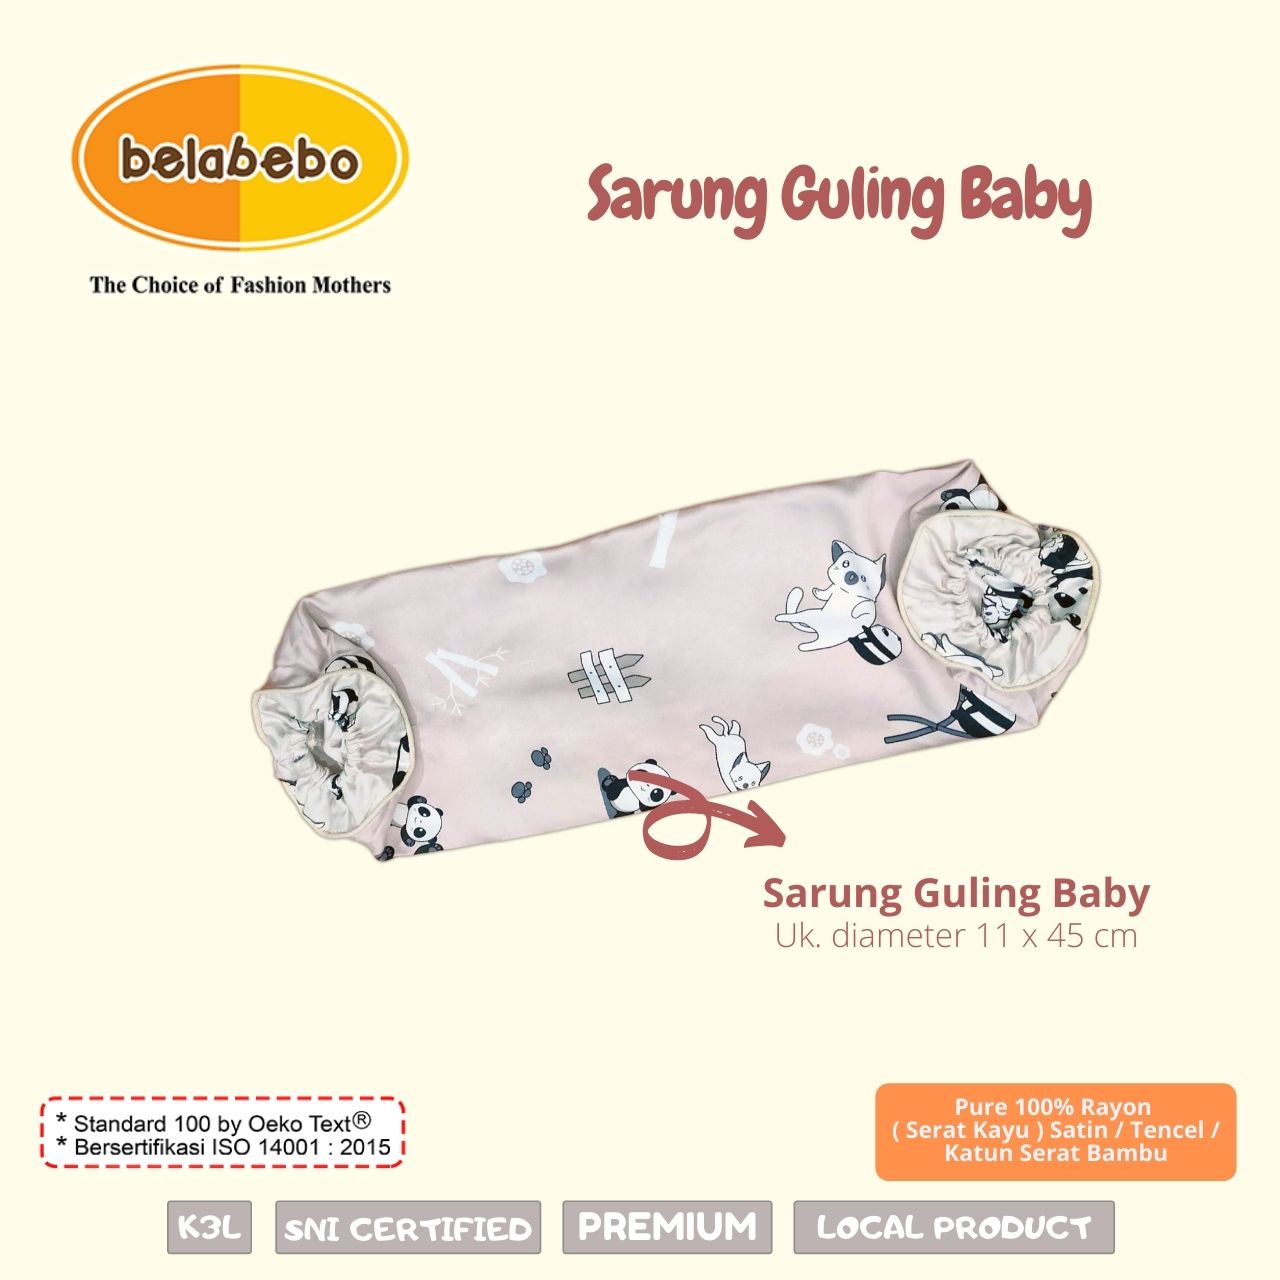 sarung Guling baby belabebo